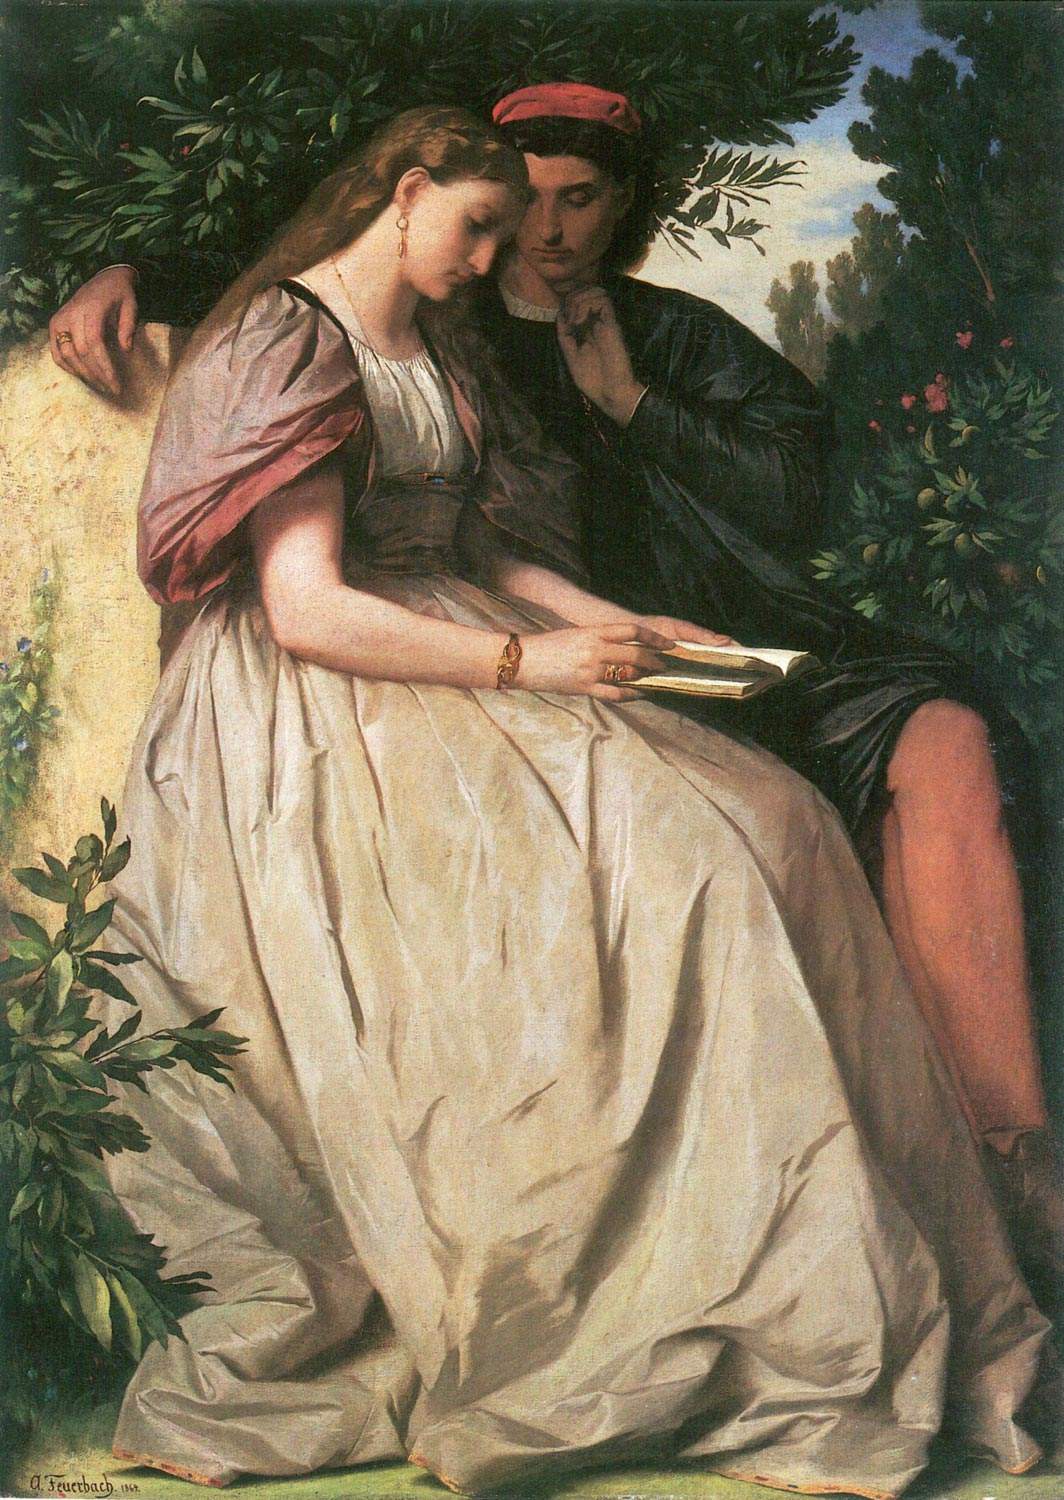 Paolo e Francesca nell'arte dell'Ottocento: dalla Commedia di Dante alla  pittura